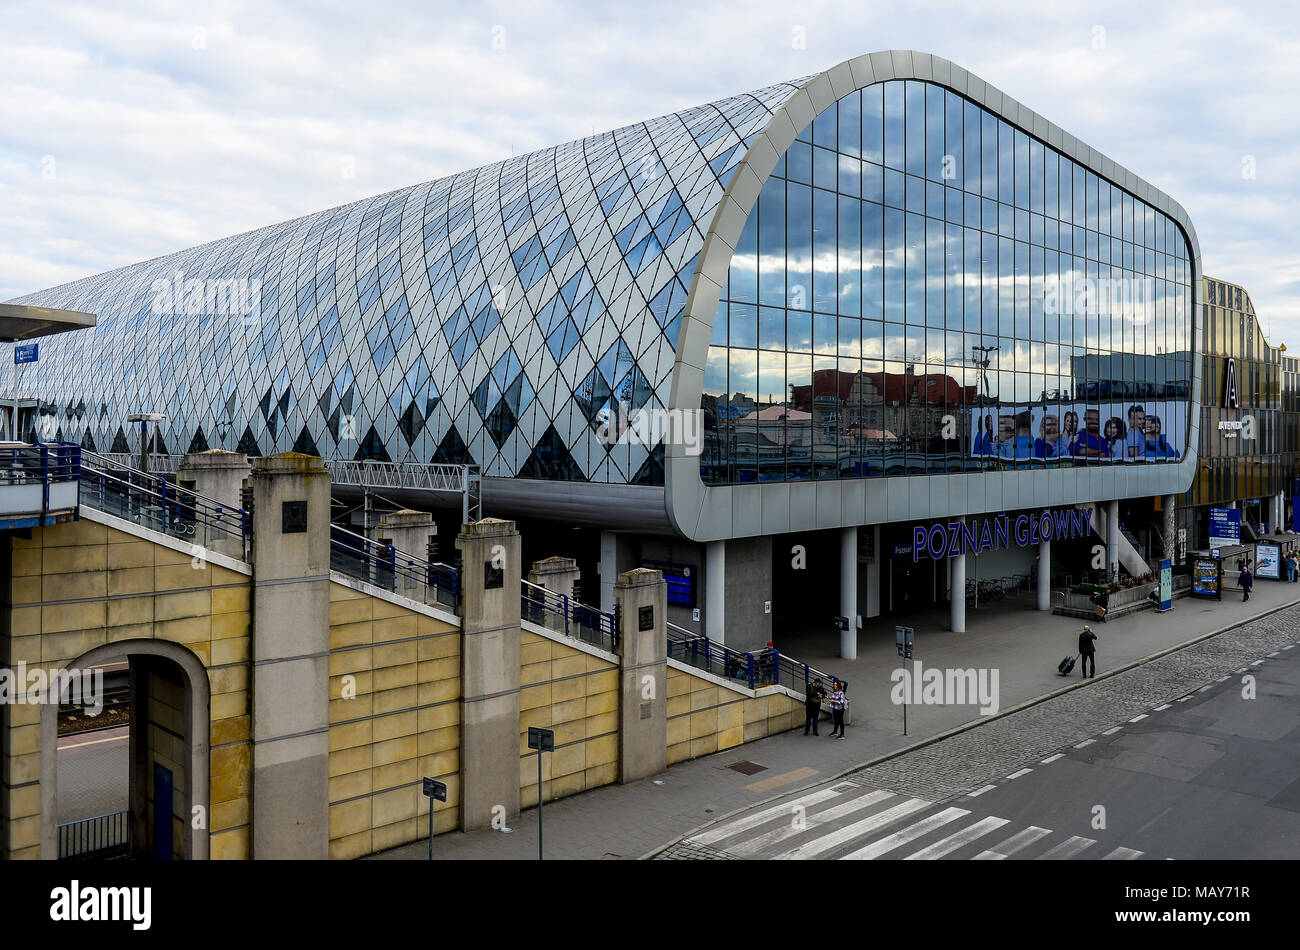 Eine allgemeine Ansicht der Hauptbahnhof in Posen. Polen ist ein Land in  Mittel- und Osteuropa angrenzenden Deutschland im Westen und der Ukraine im  Osten Stockfotografie - Alamy